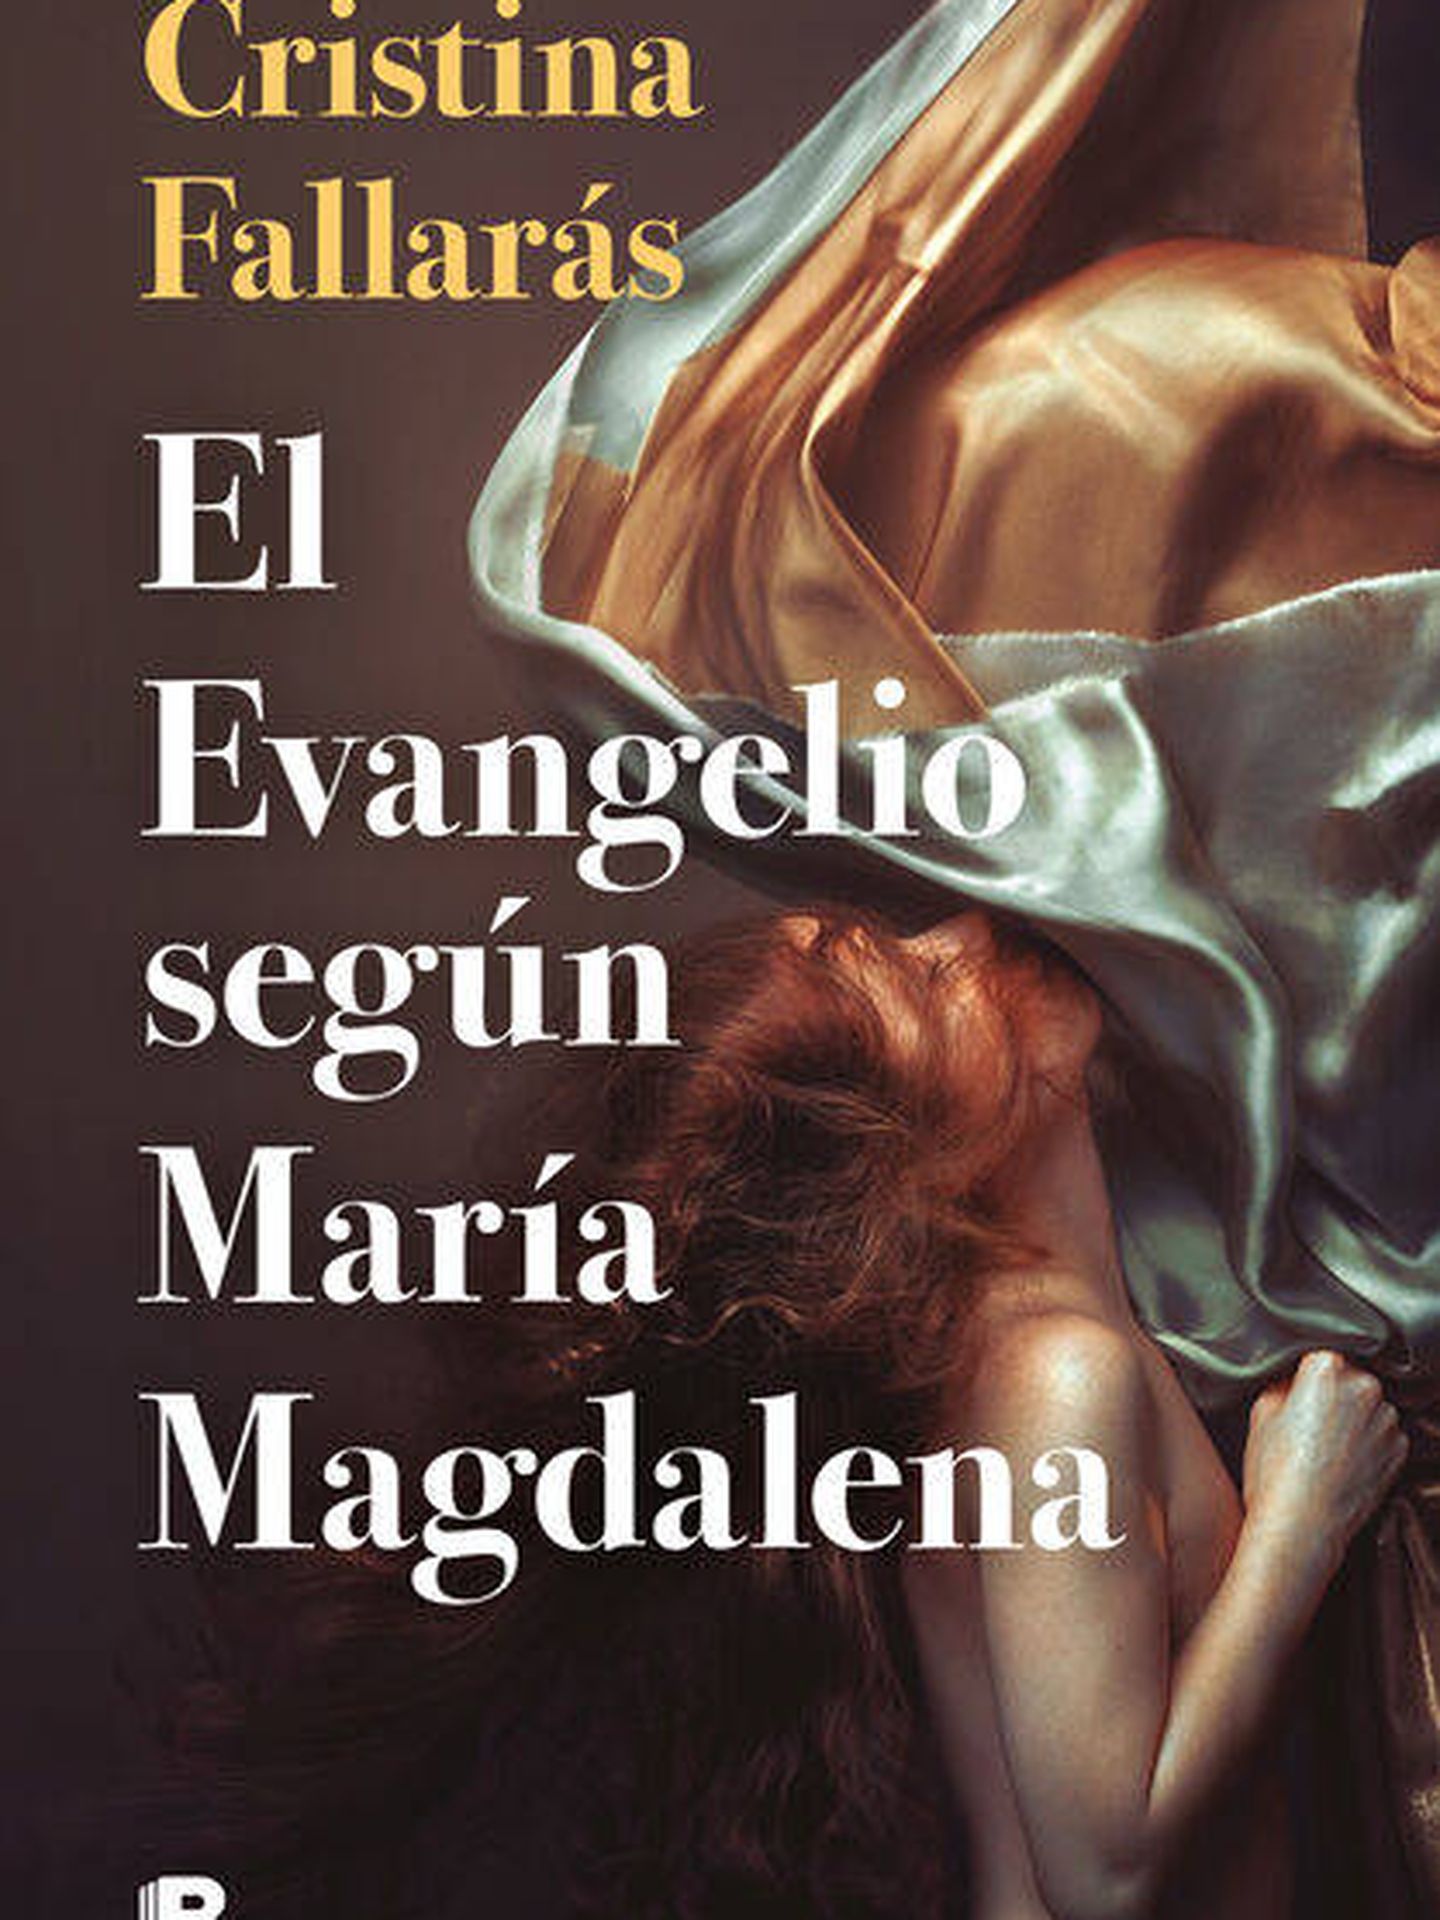 'El evangelio según María Magdalena'